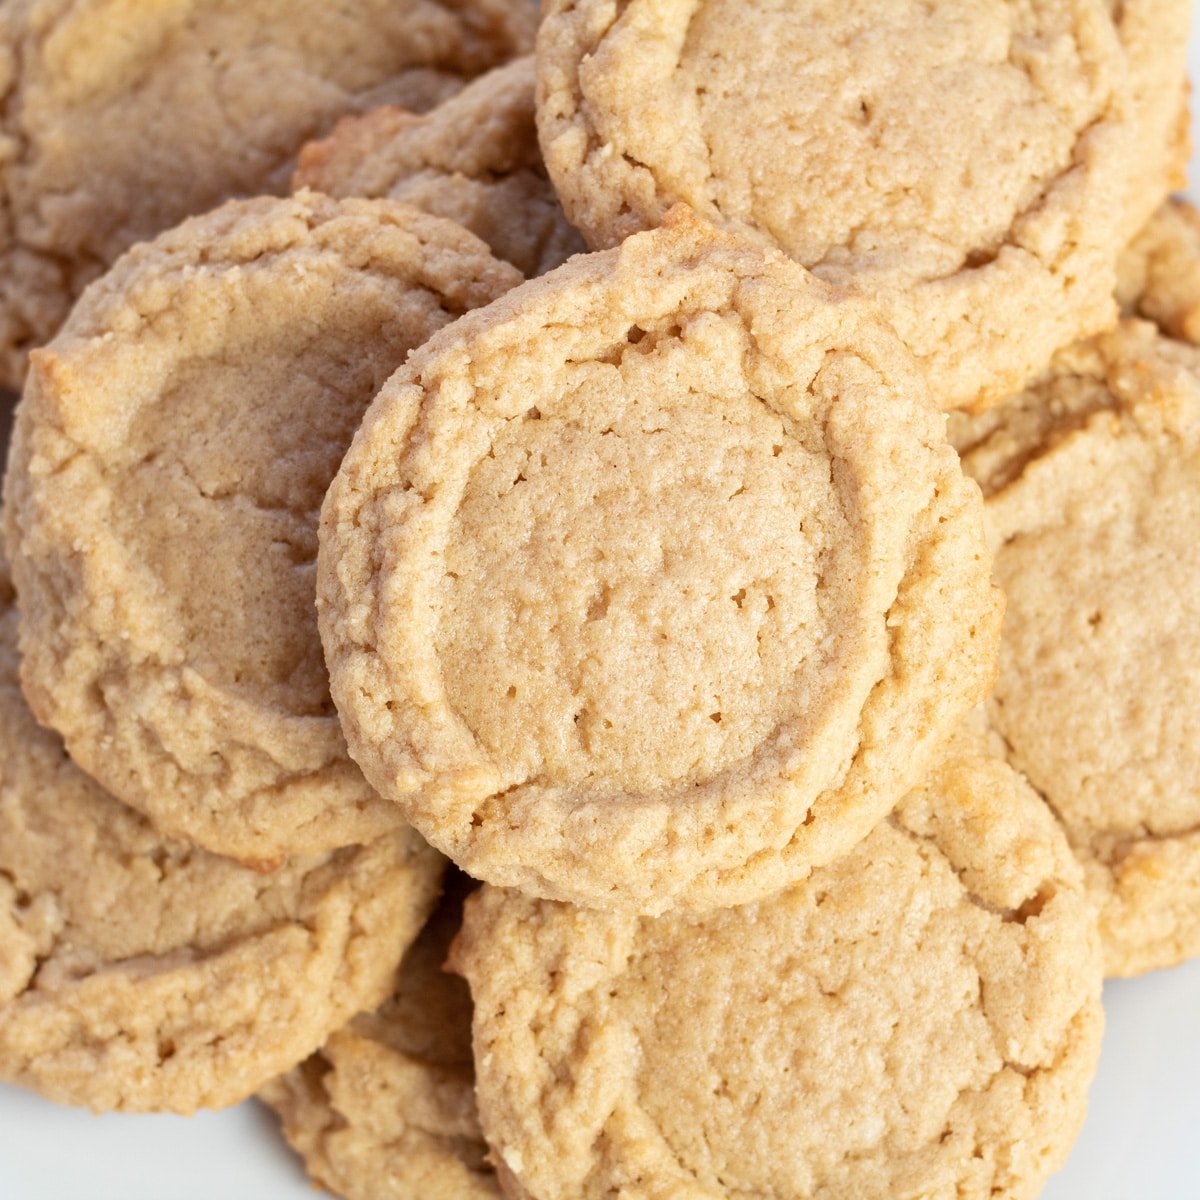 Immagine aerea quadrata di più biscotti al burro di arachidi.